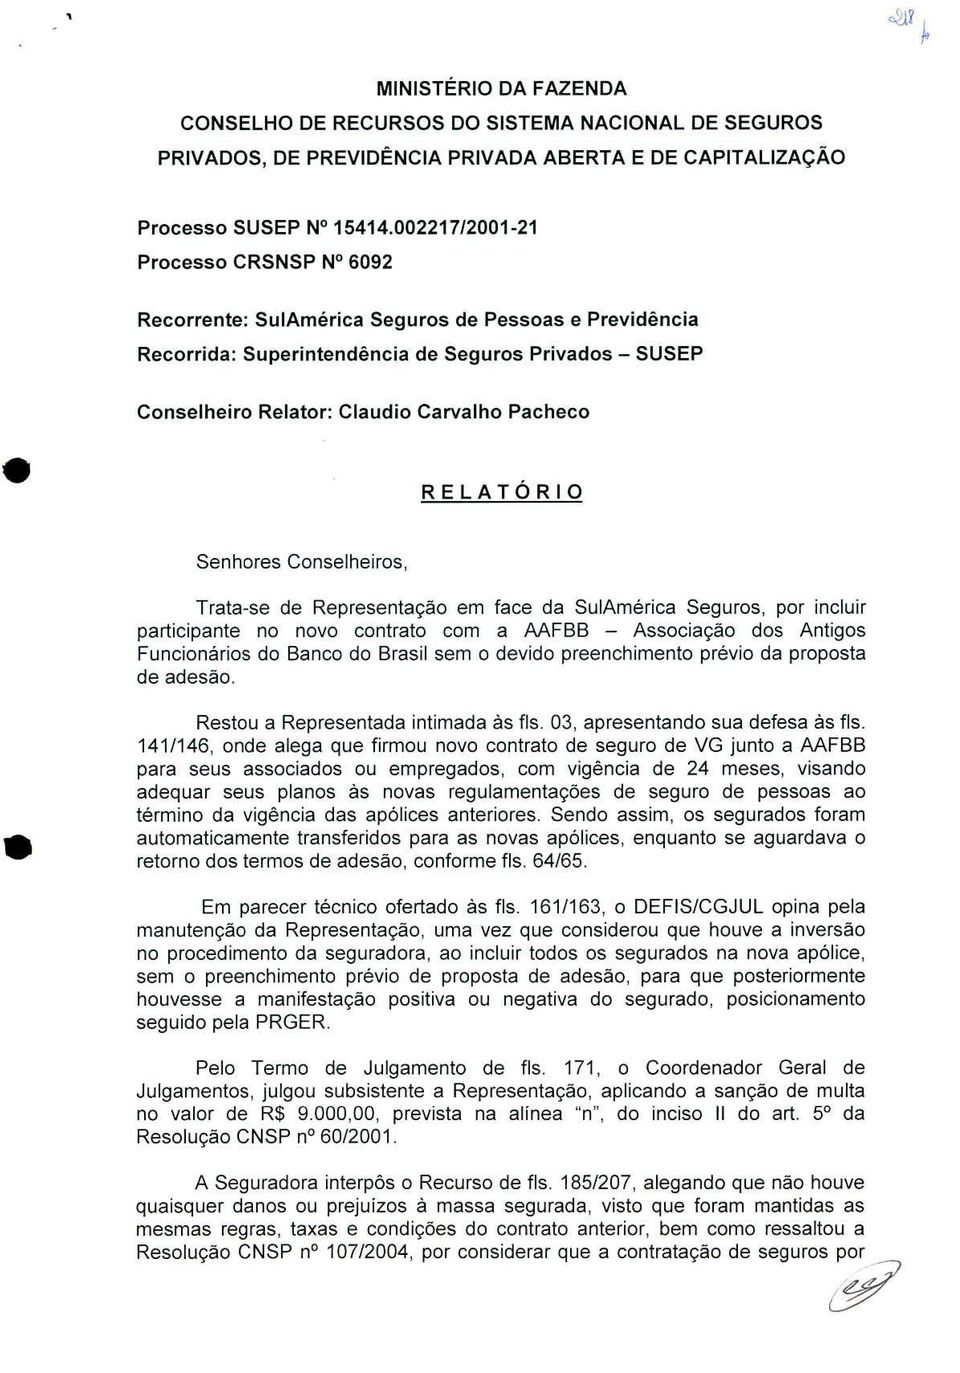 RELATORIO Senhores Conselheiros, Trata-se de Representação em face da SulAmérica Seguros, por incluir participante no novo contrato com a AAFBB - Associação dos Antigos Funcionários do Banco do